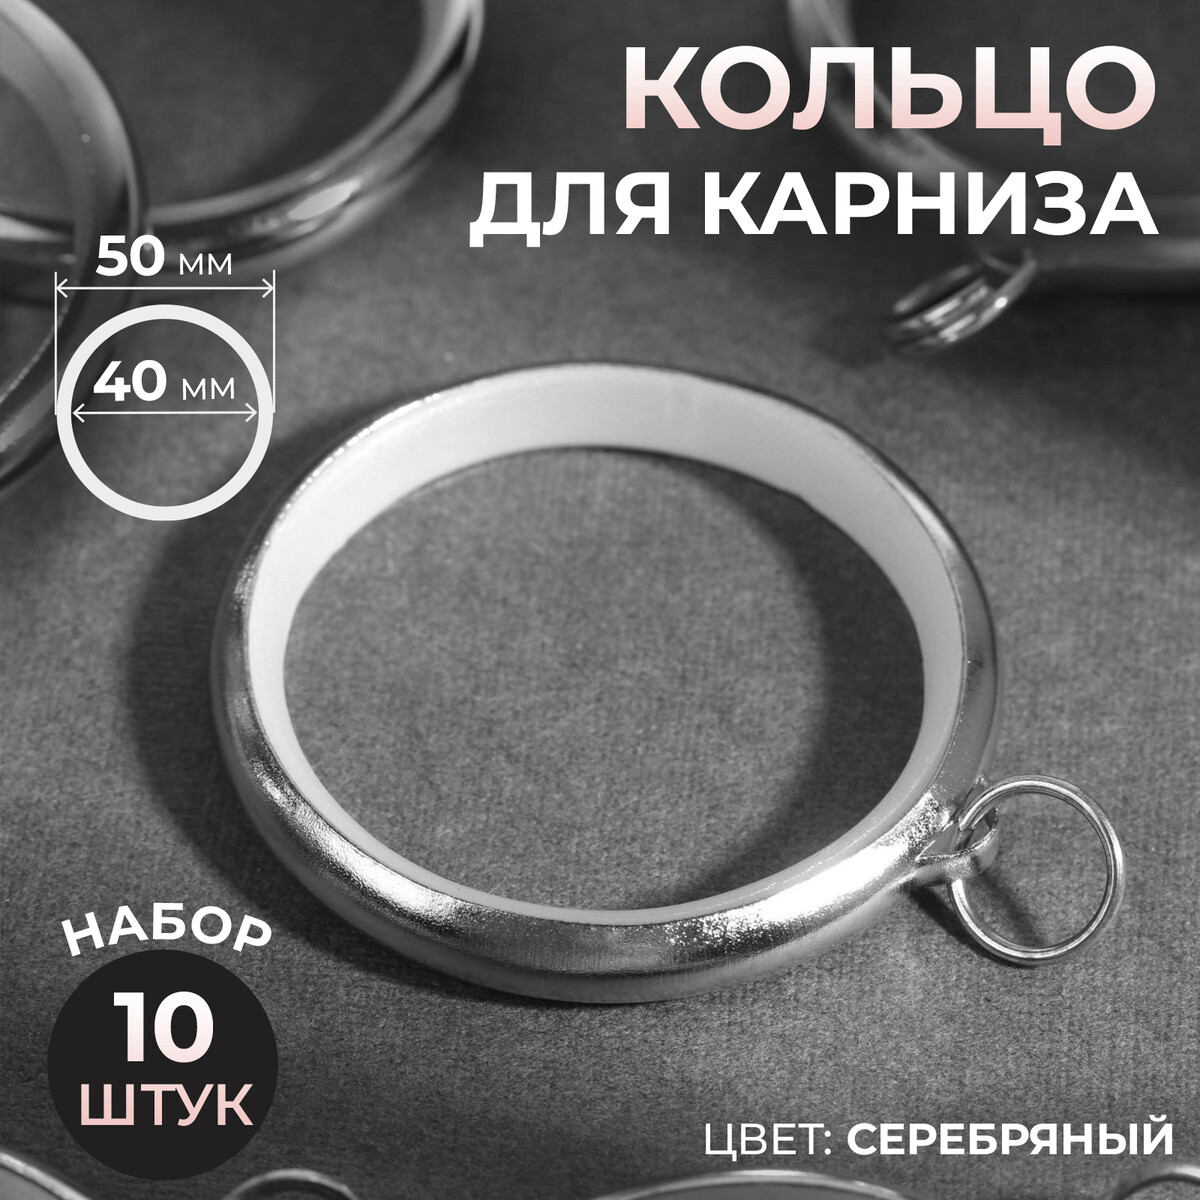 Кольцо для карниза, d = 40/50 мм, 10 шт, цвет серебряный кольцо для карниза d 40 50 мм 10 шт серебряный